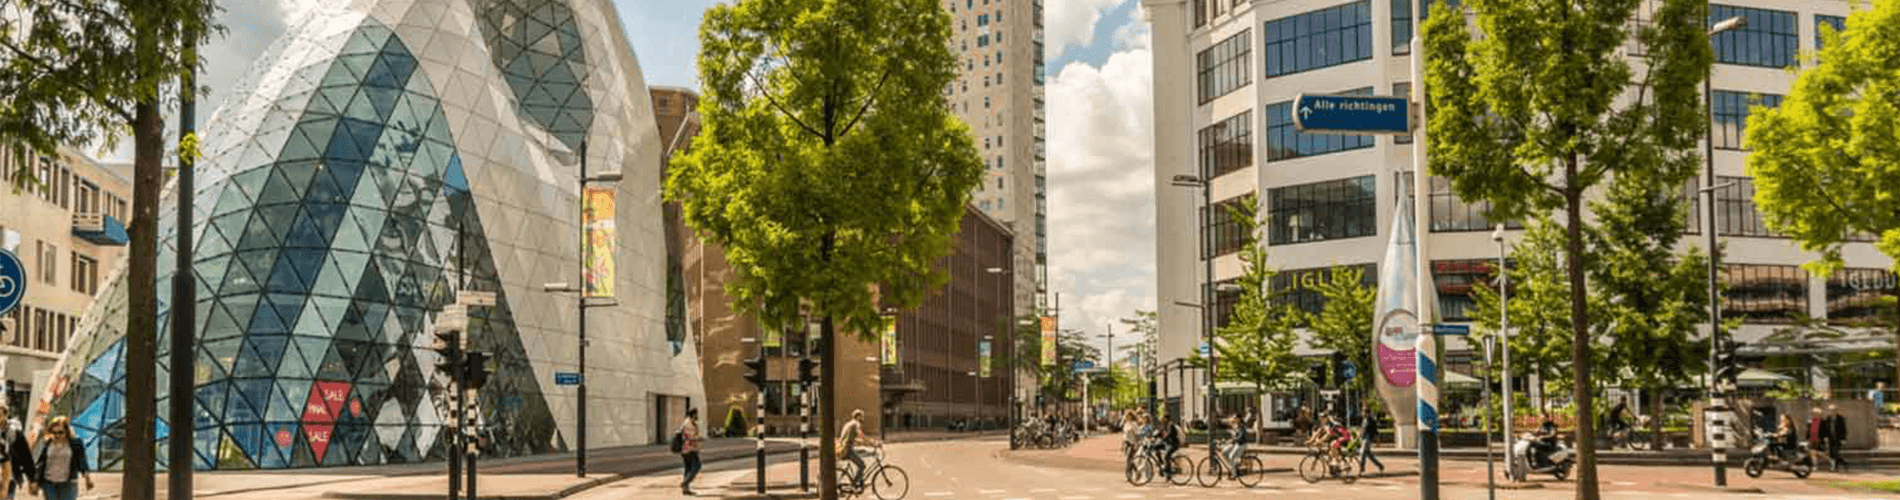 Zomeruitjes in Eindhoven centrum